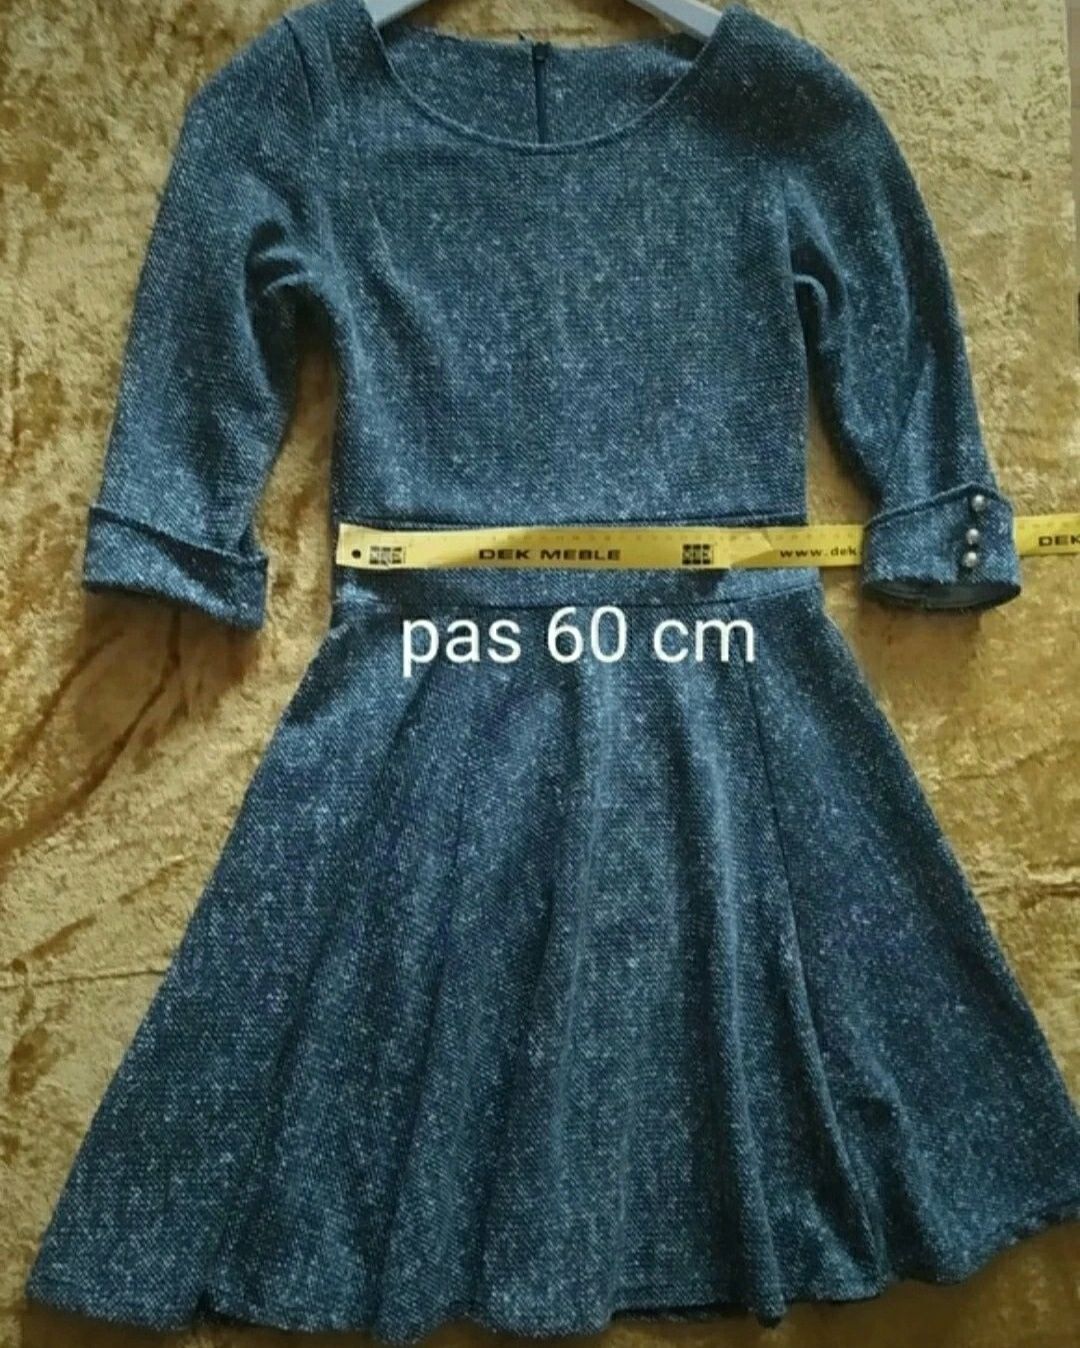 Włoska sukienka 34 XS długi rękaw melanż szary tanio złote guziki